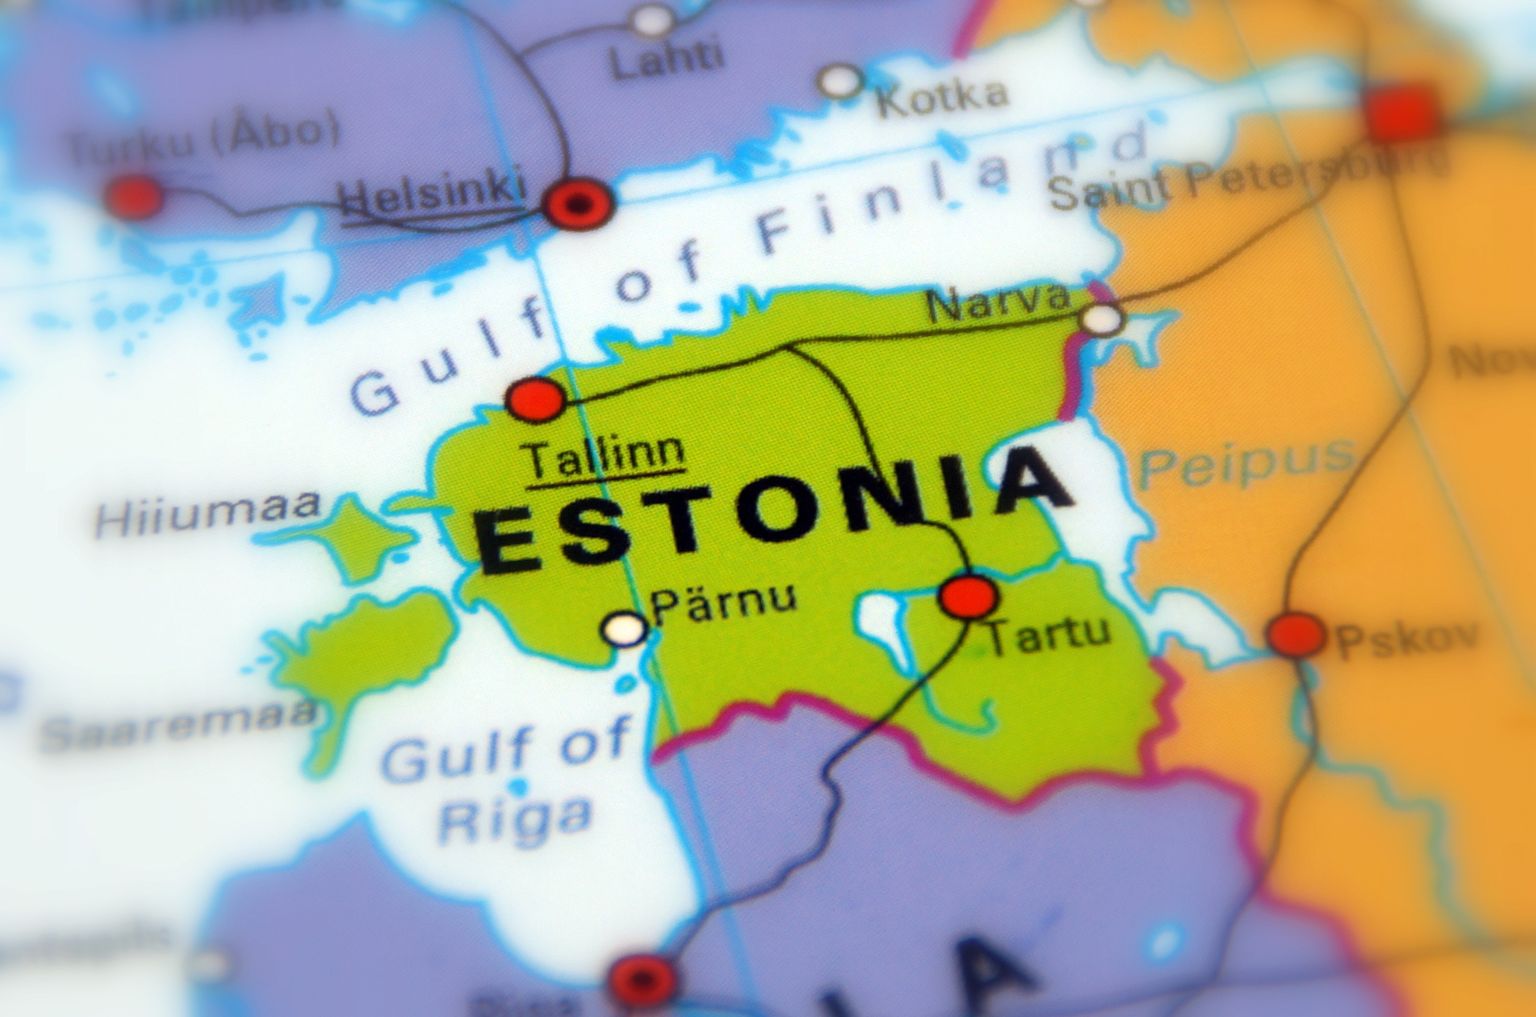 Rootsi sisulooja palus Eestit ühe sõnaga kirjeldada, tulemus oli...